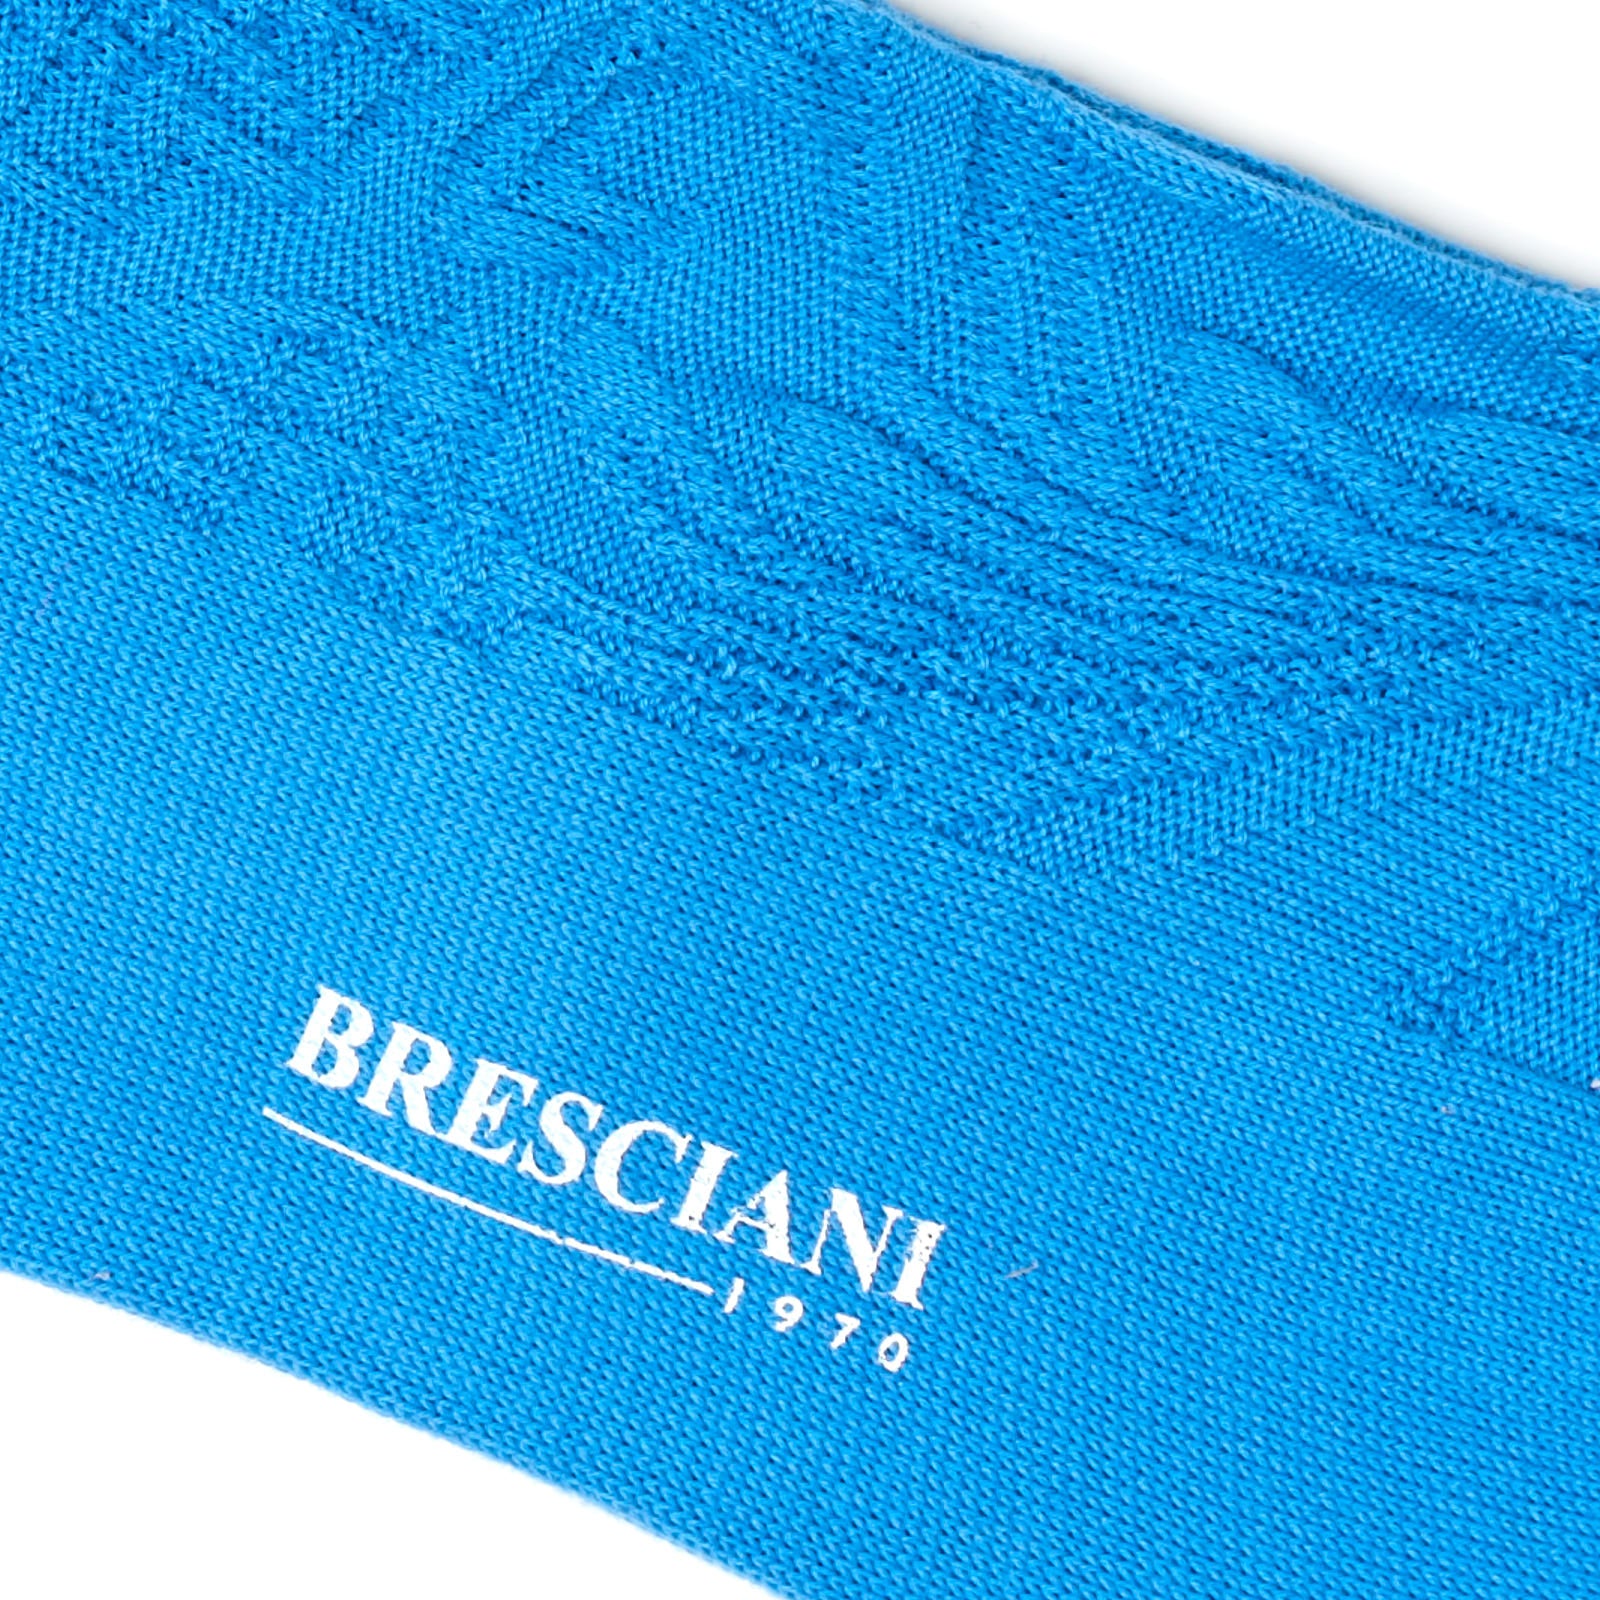 BRESCIANI Cotton Stitch Pattern Design Mid Calf Length Socks US M-L BRESCIANI